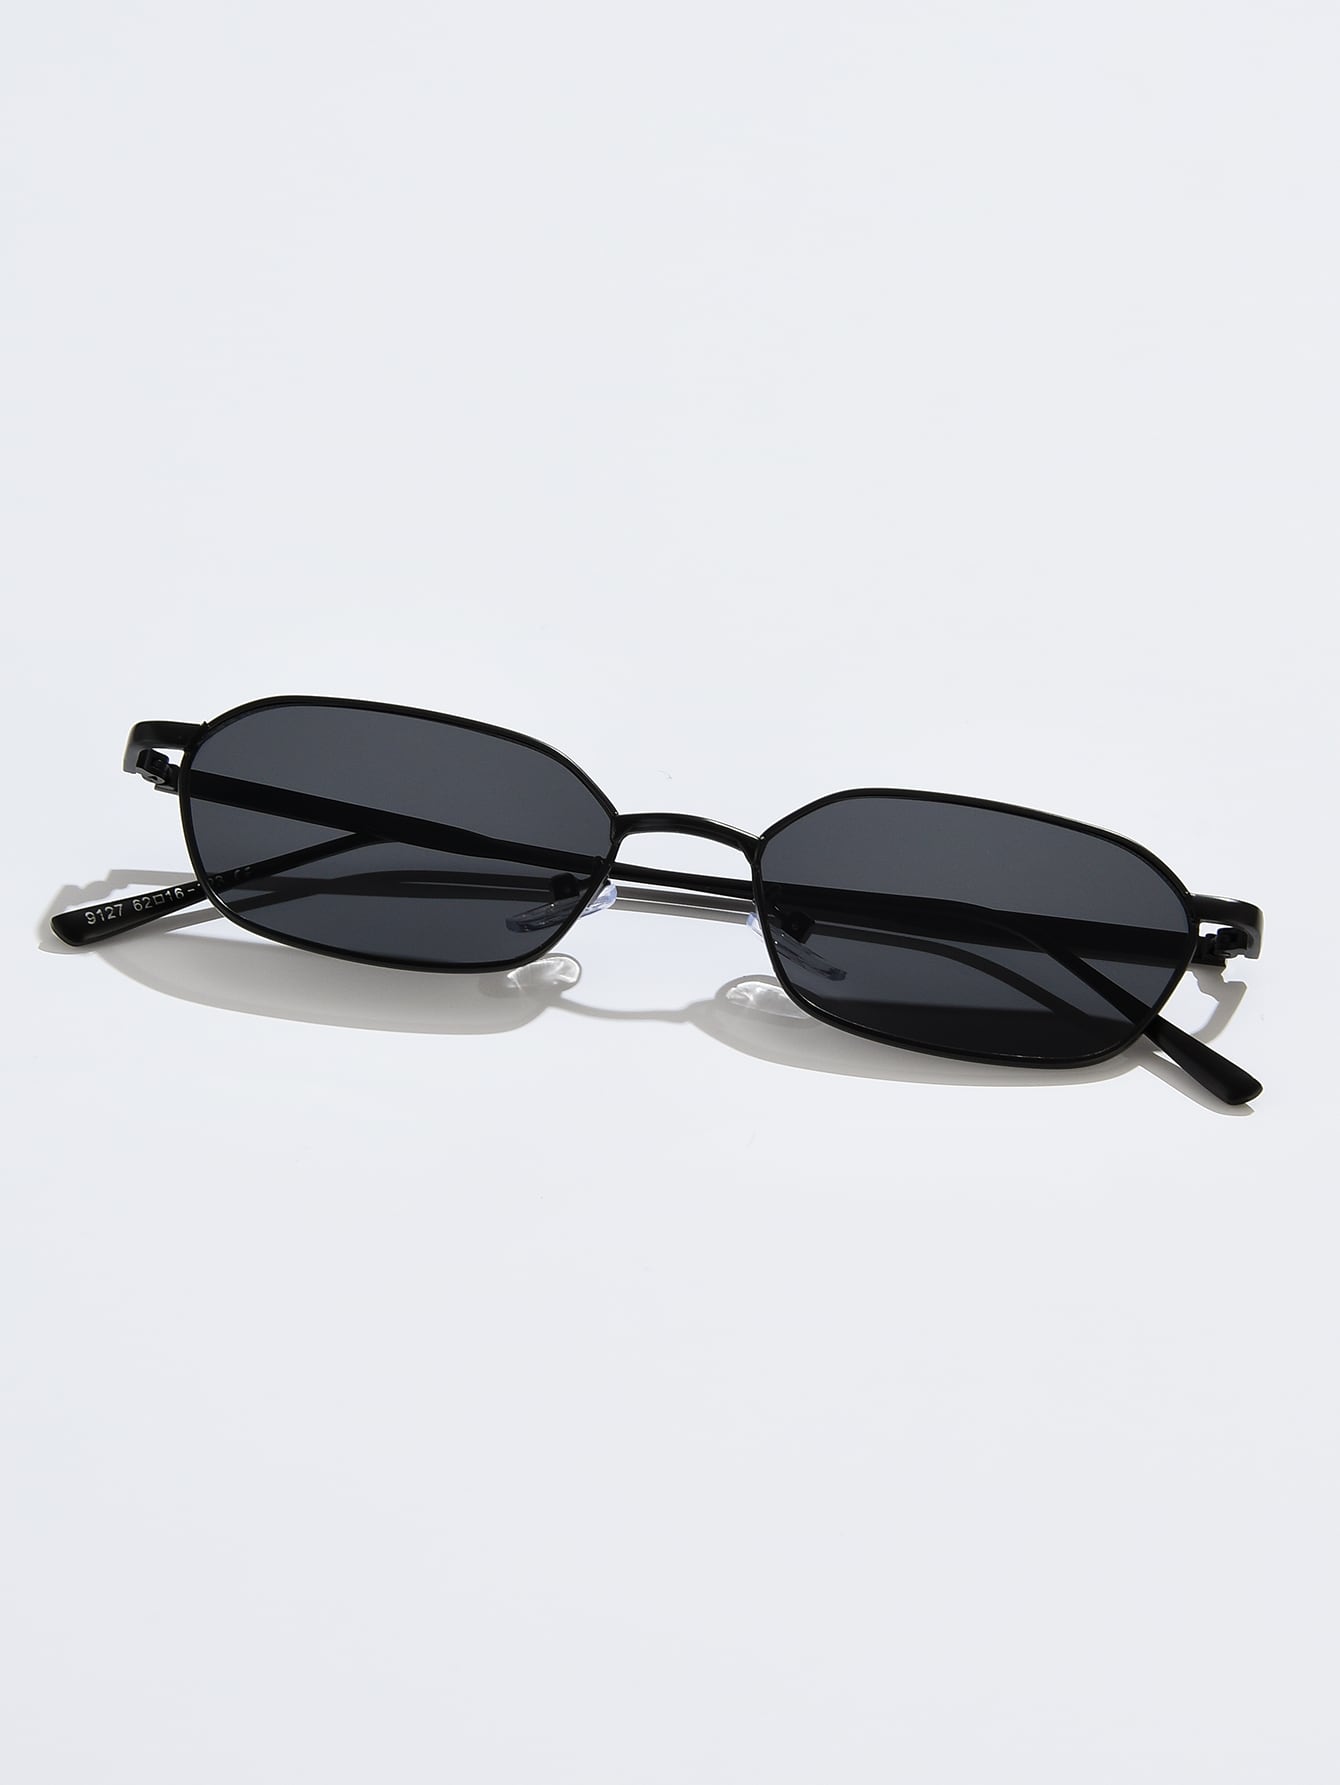 Модные очки в металлической оправе в стиле ретро с тонированными линзами для модного винтажного образа модные модные очки в квадратной оправе с тонированными линзами